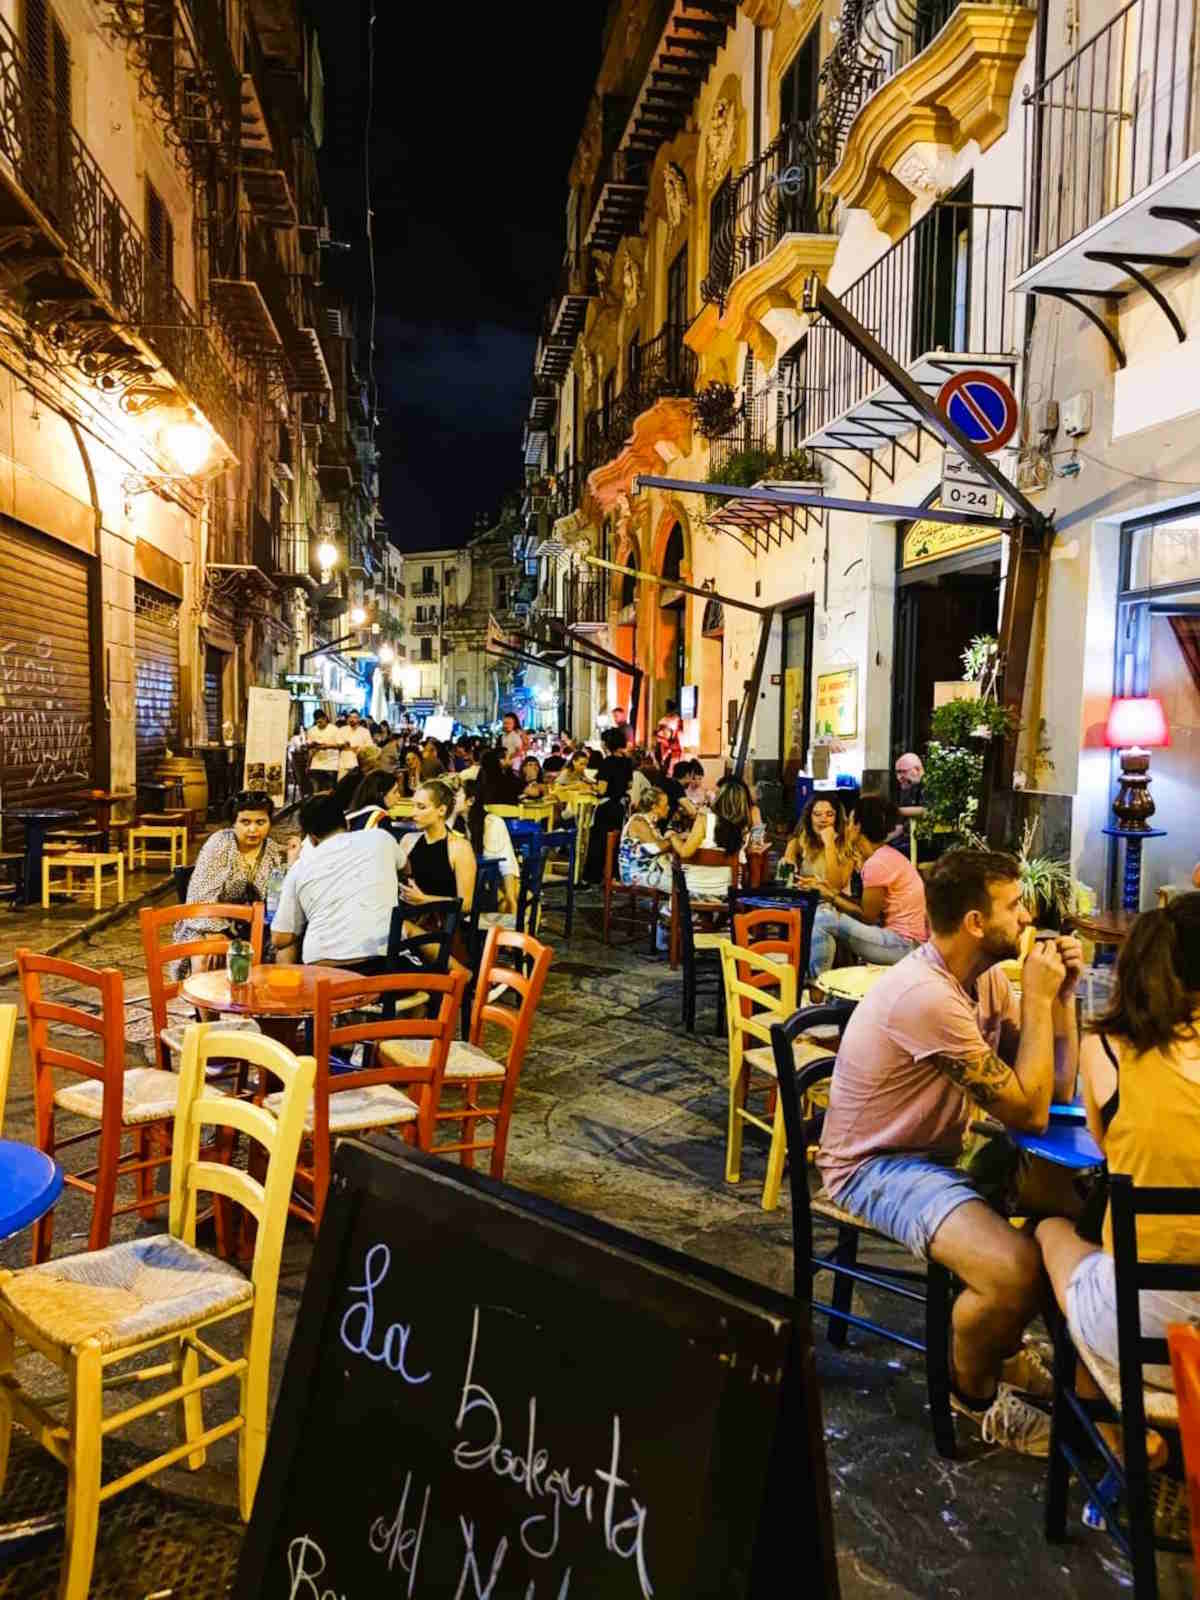 Le strade di Palermo aree di movida e ristorantini